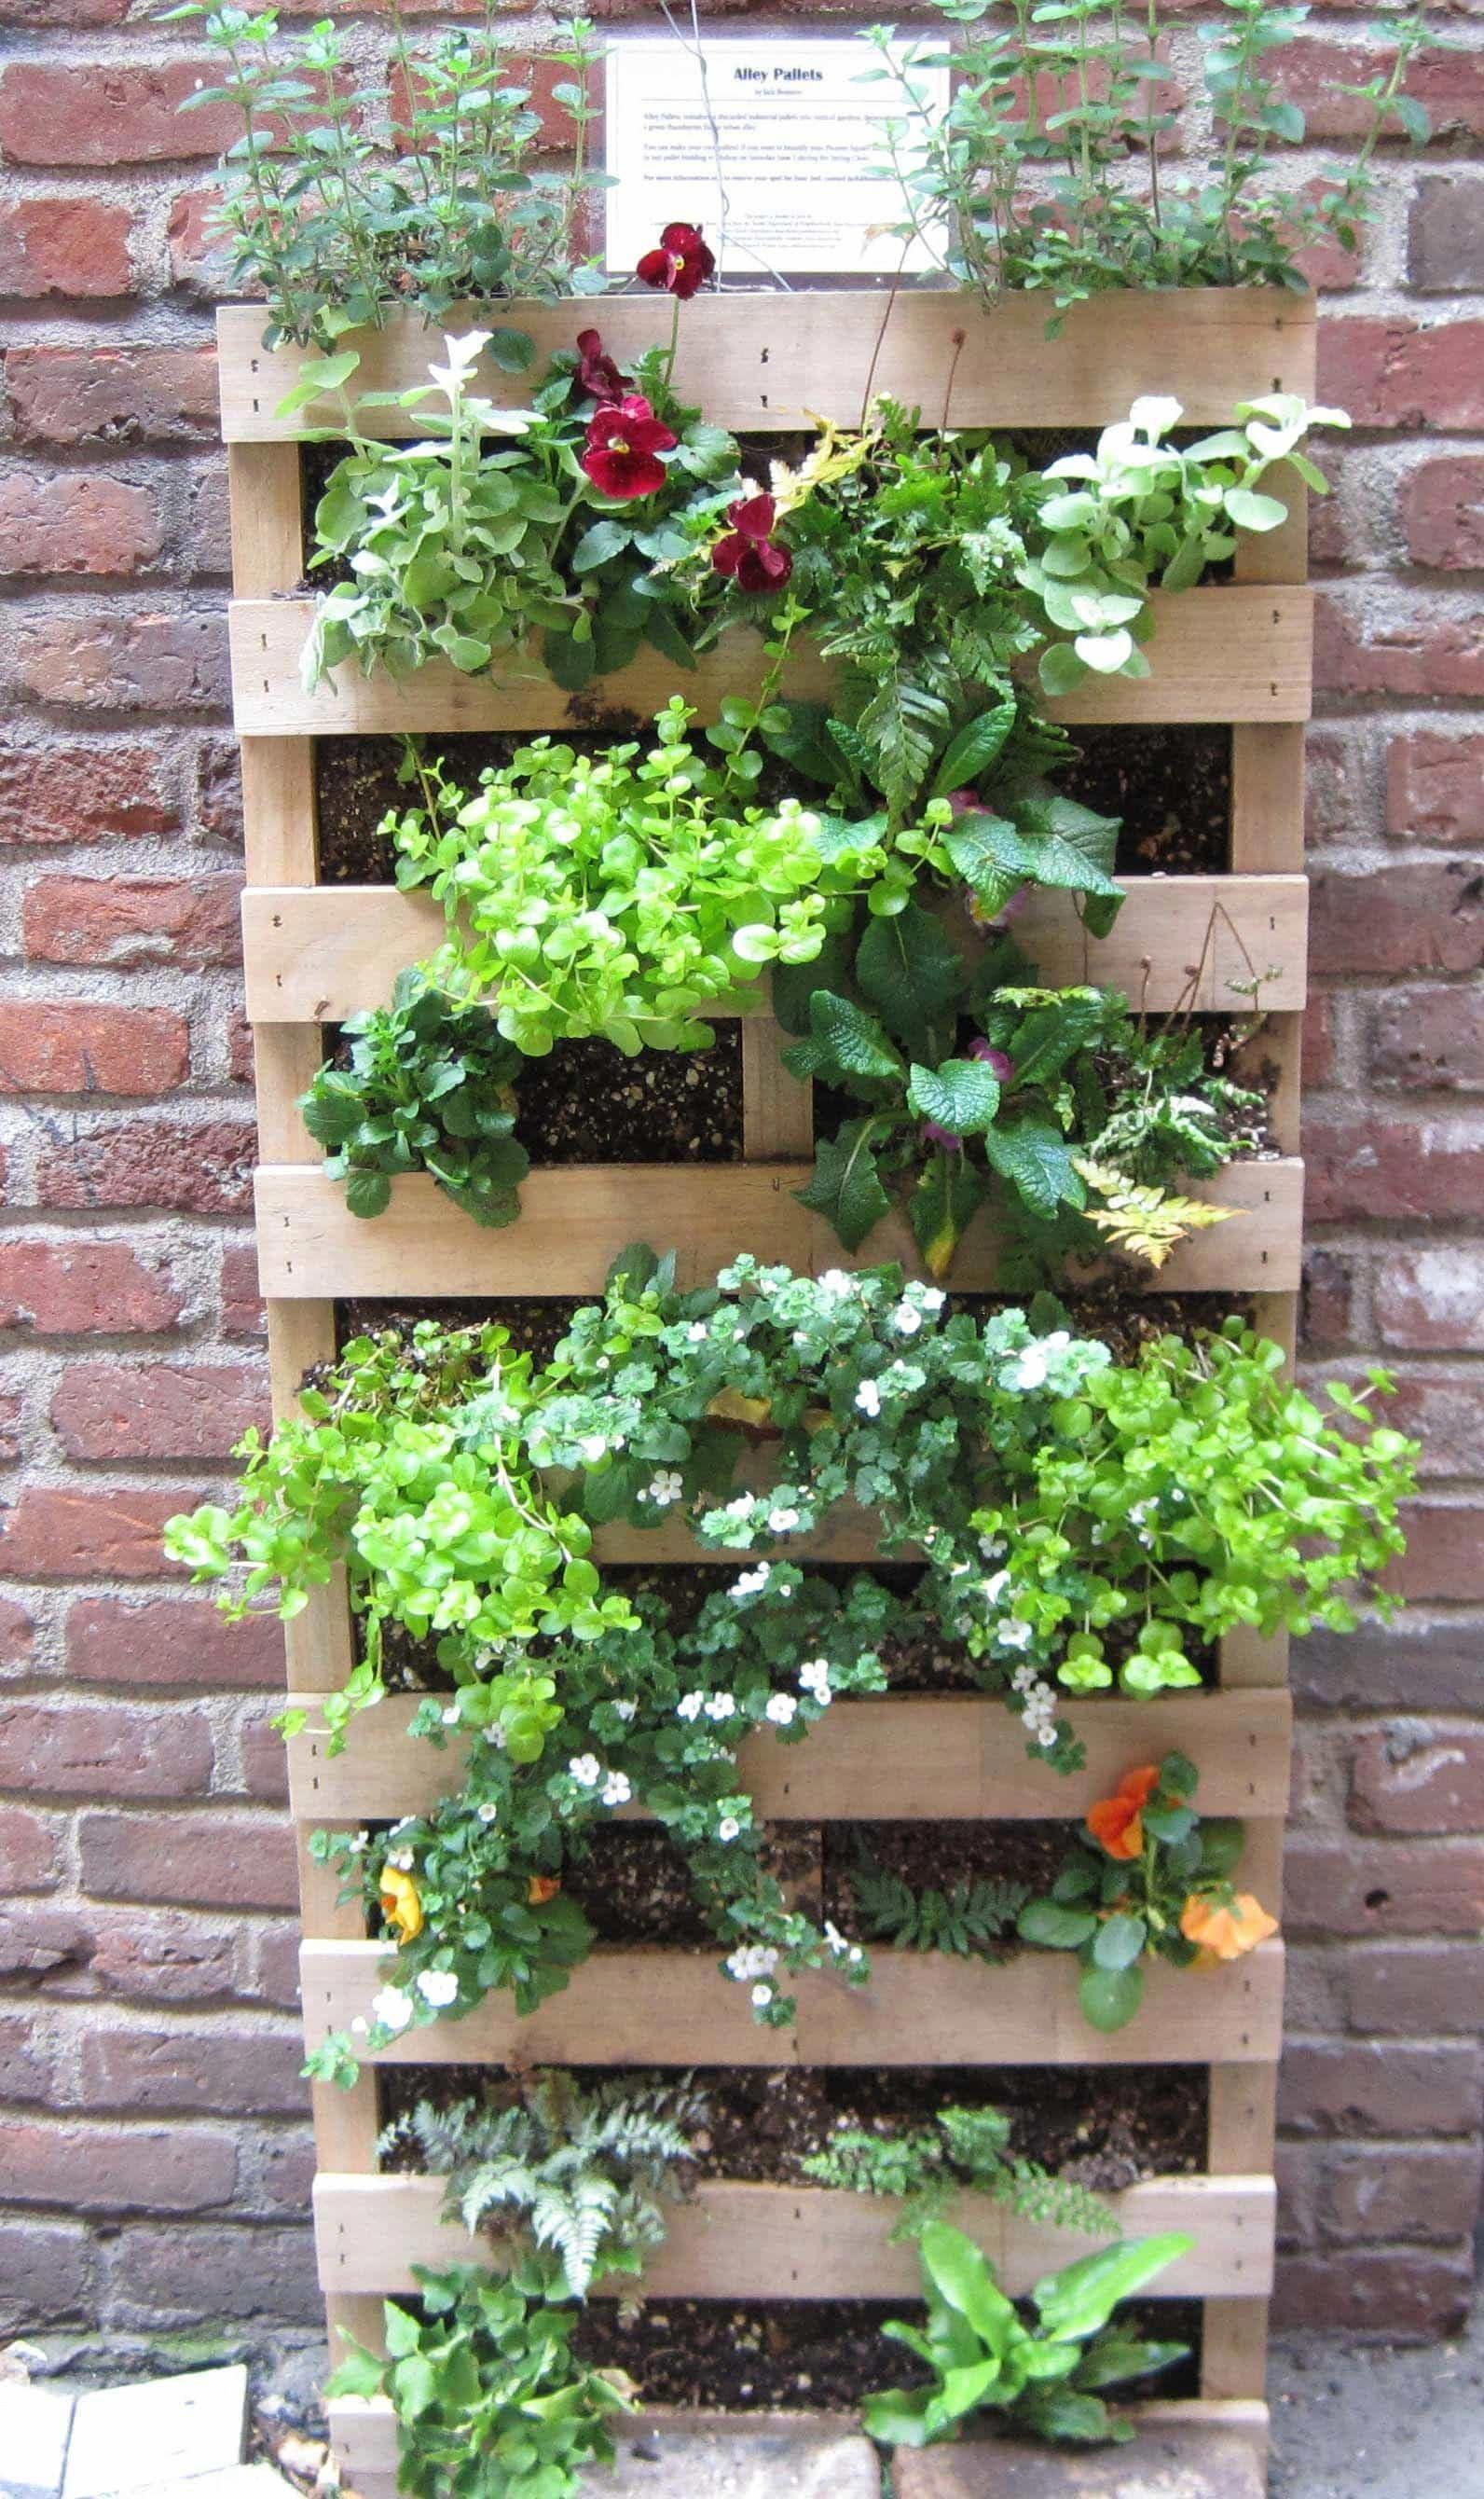 Creative Outdoor Herb Garden Ideas